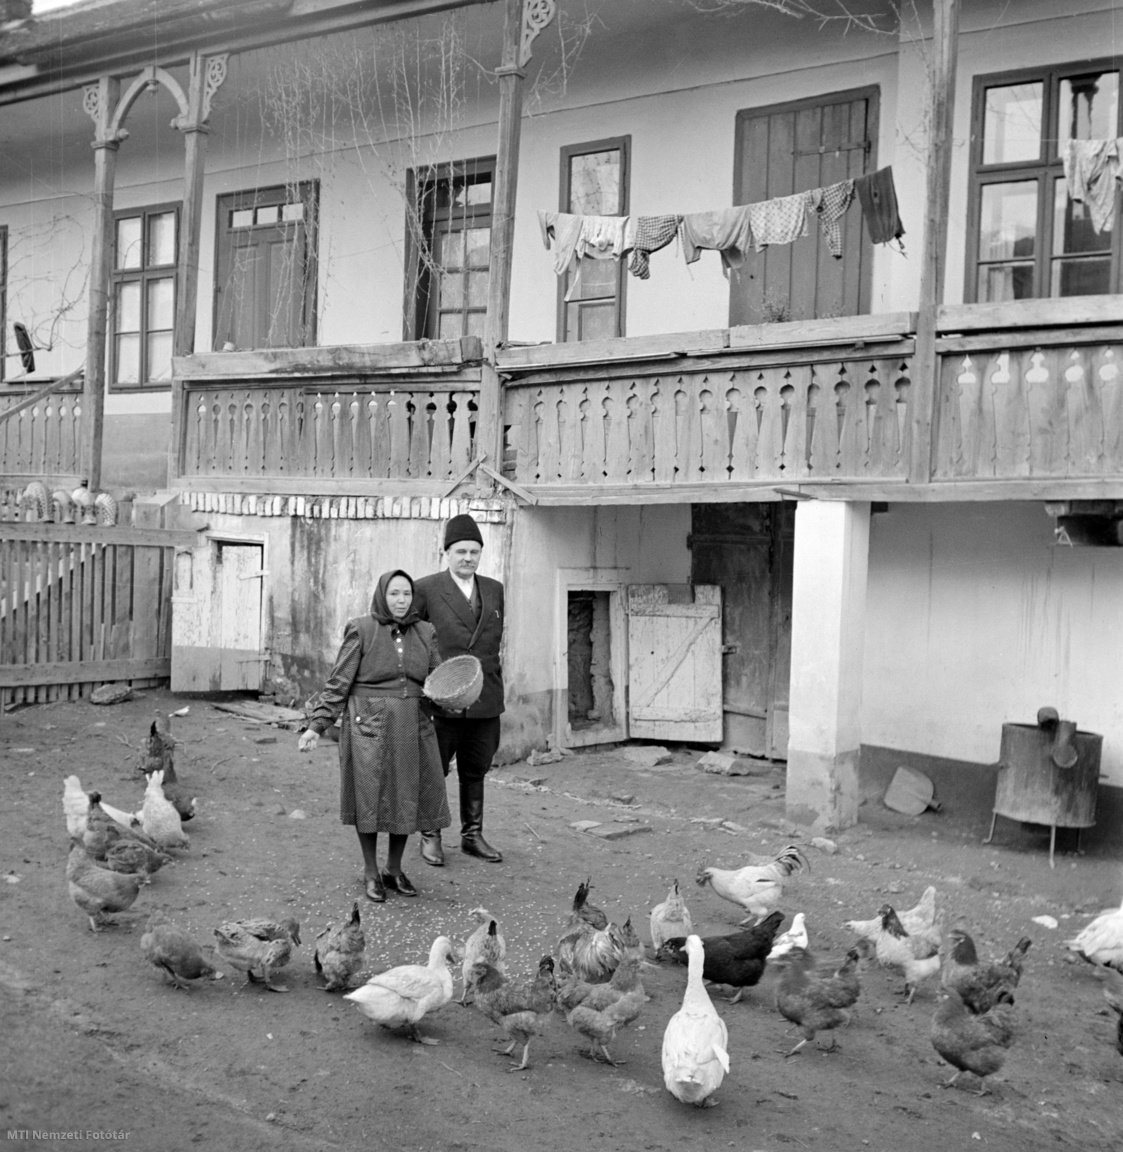 Békásmegyer, 1951. január Veres Péter Kossuth-díjas író, politikus a baromfik etetését figyeli békásmegyeri házának udvarán. A felvétel készítésének pontos napja ismeretlen.